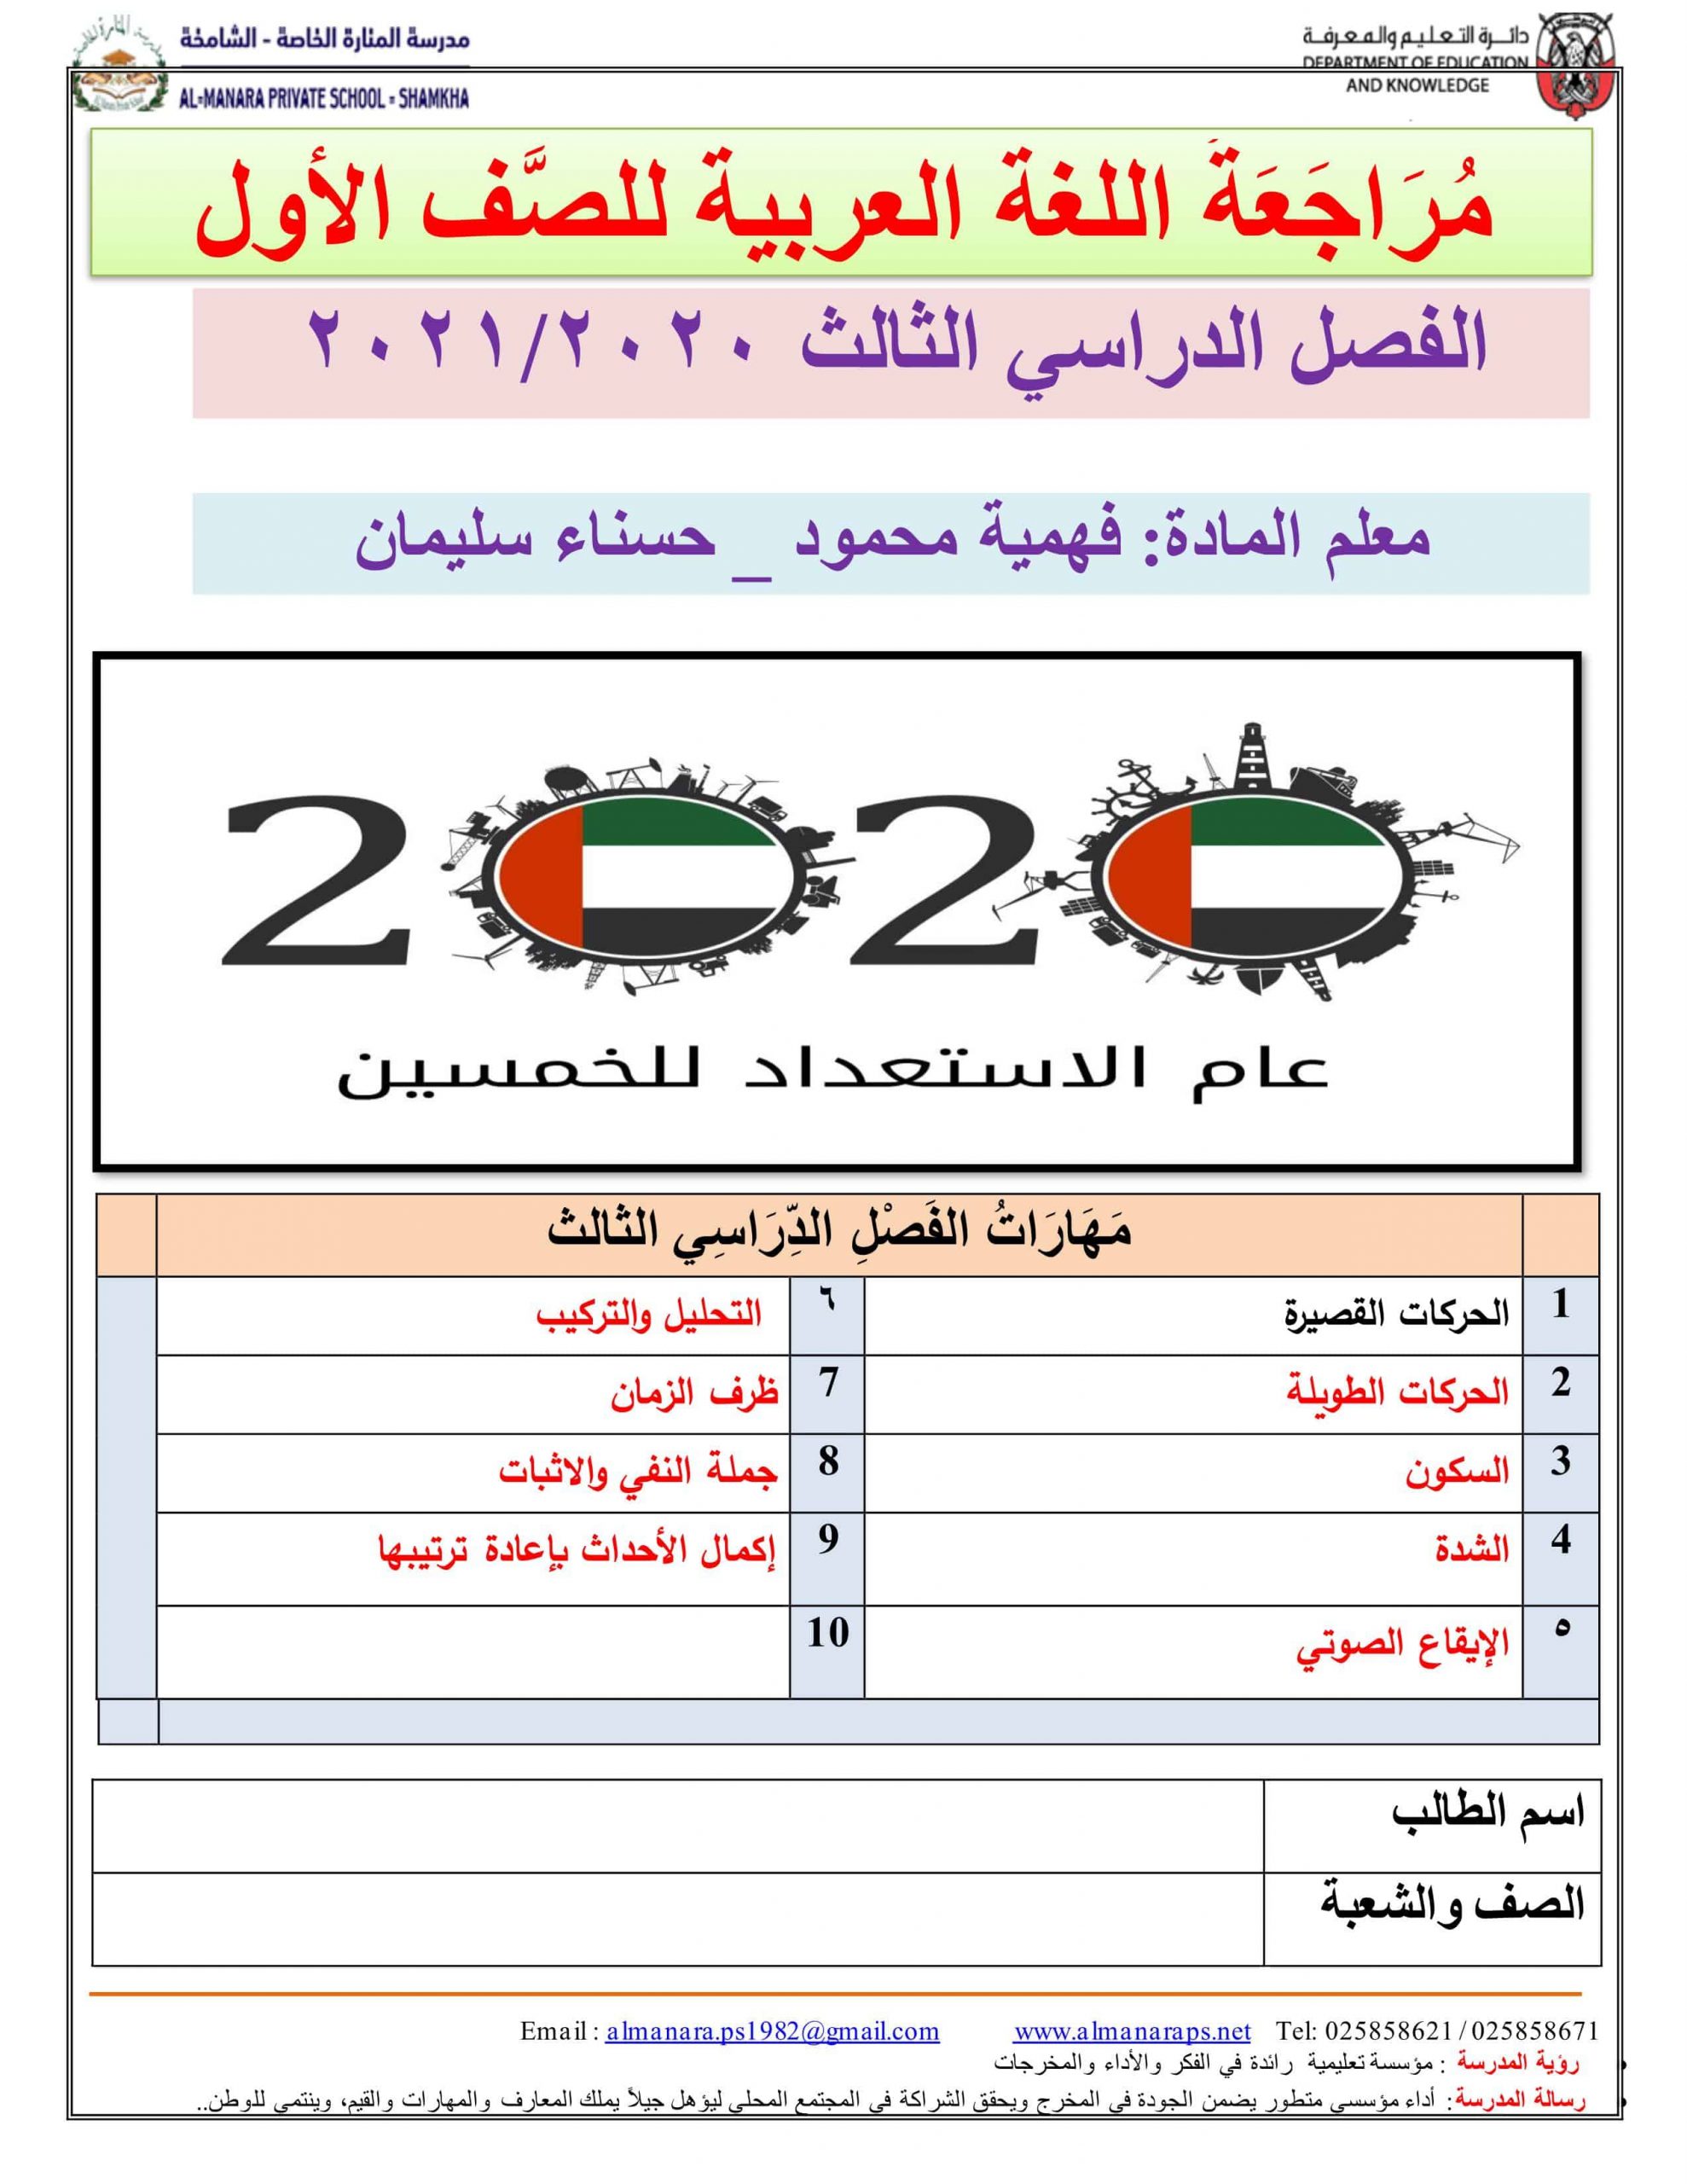 أوراق عمل مراجعة شاملة الفصل الدراسي الثالث الصف الأول مادة اللغة العربية 